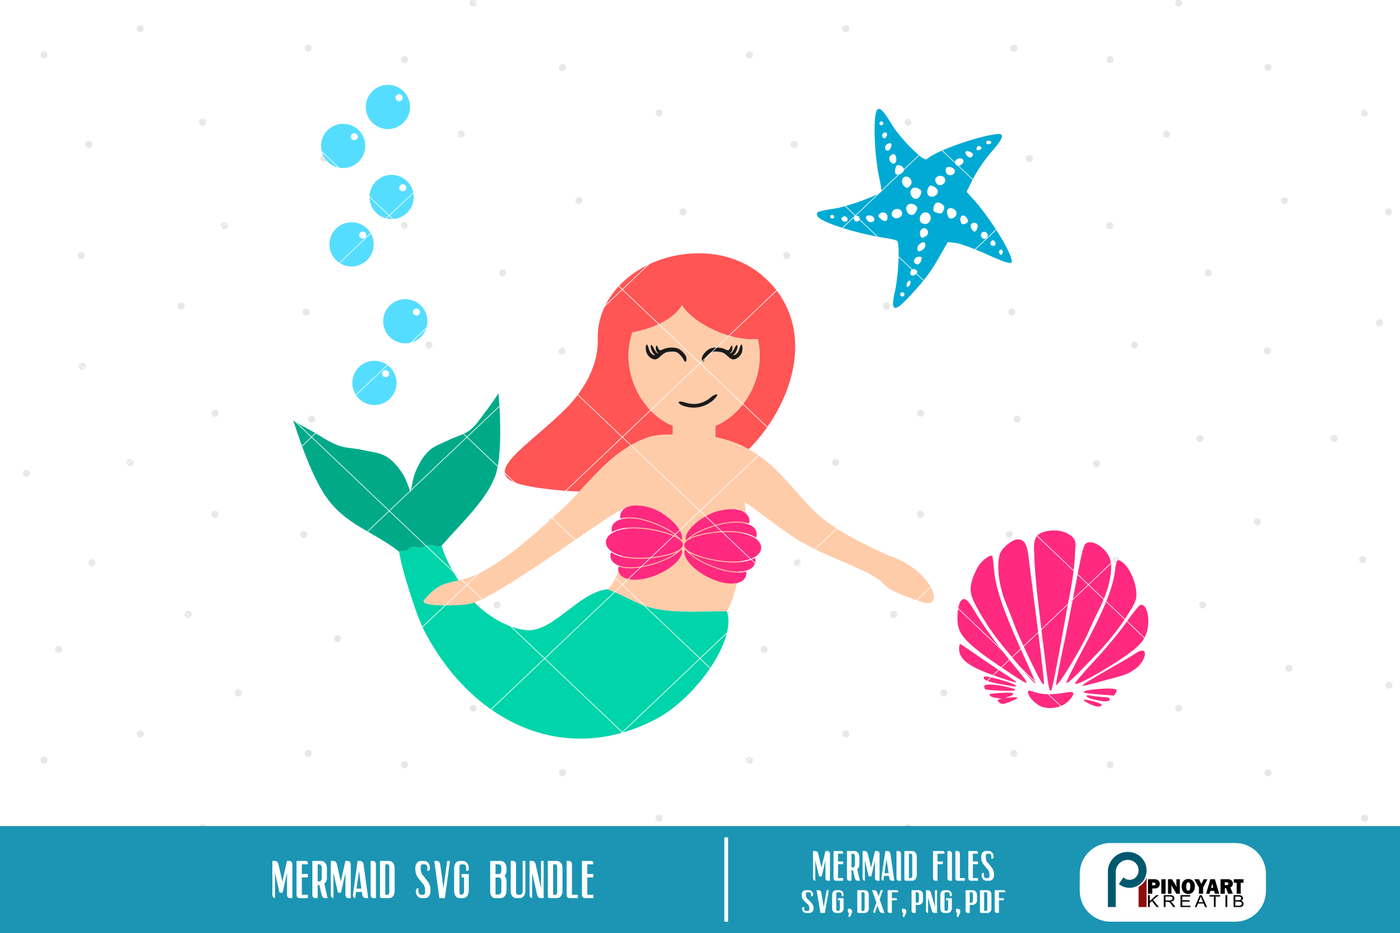 Download mermaid svg,mermaid svg file,mermaid dxf,mermaid dxf file ...